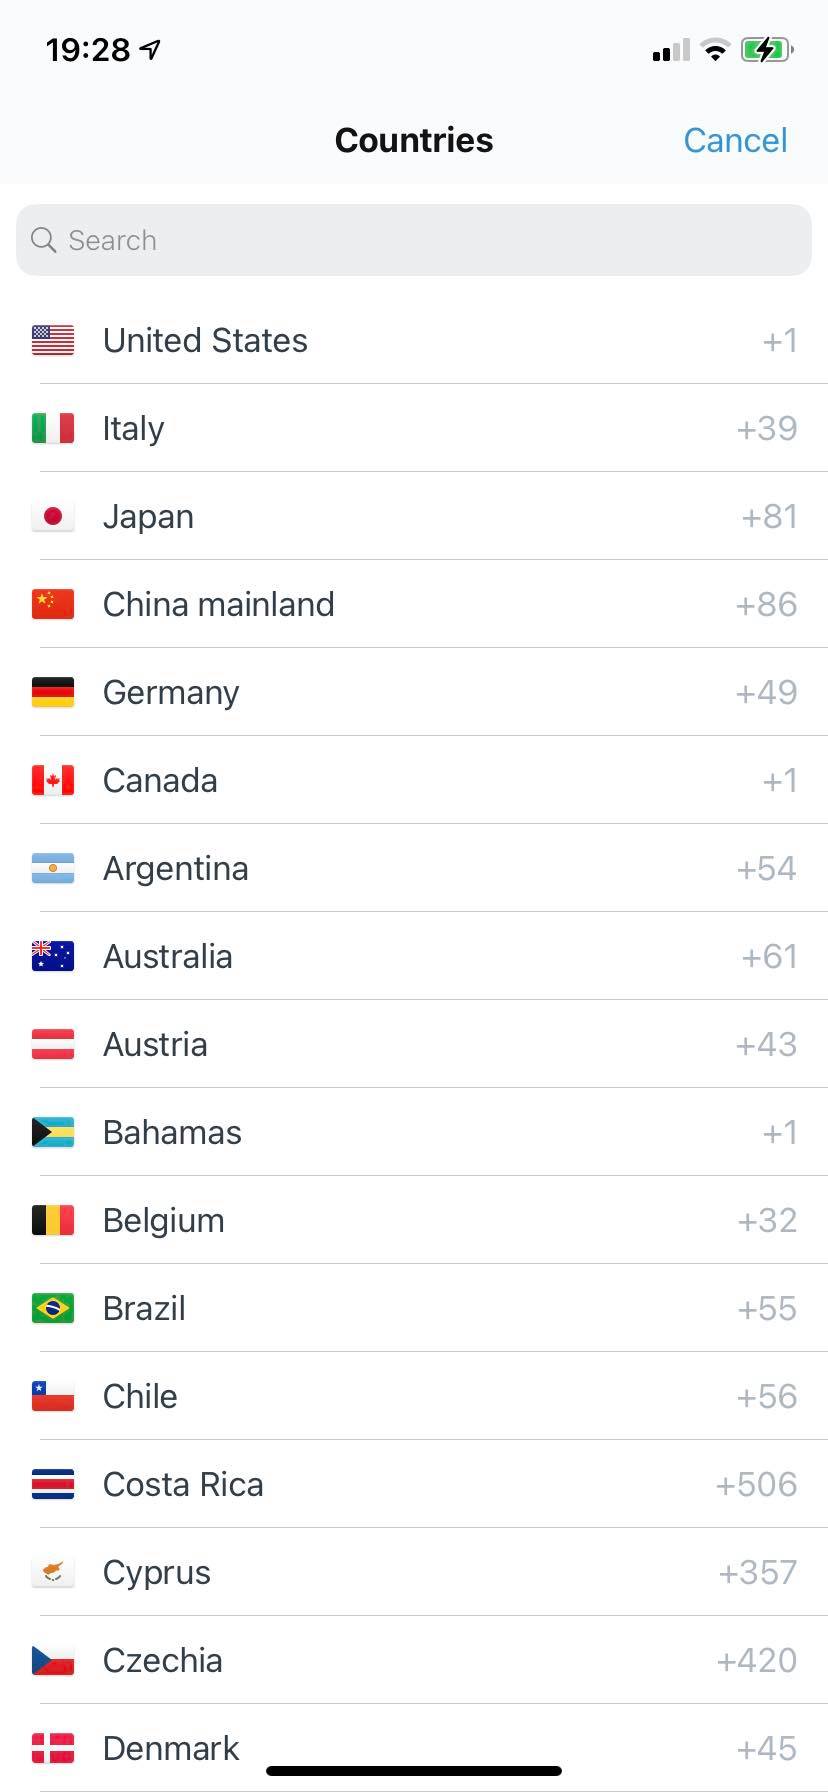 Countries_List.jpg